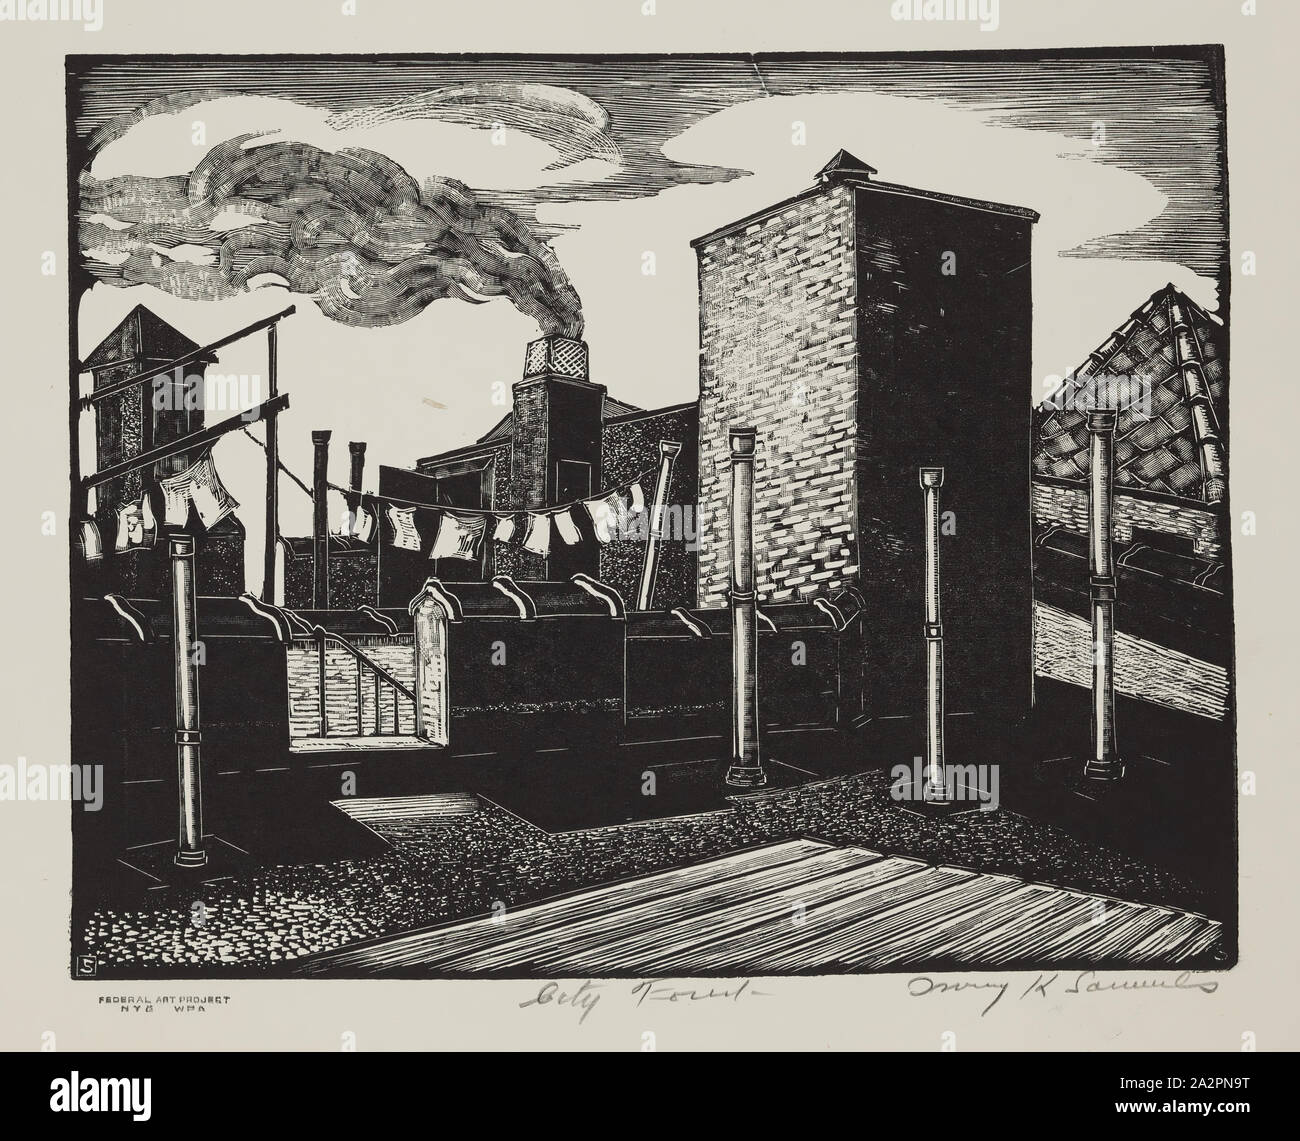 Irving K. Samuels, americano, foresta della città, tra il 1935 e il 1943, incisione su legno stampato in nero su carta intessuta, Immagine: 7 7/8 x 9 7/8 pollici (20 × 25,1 cm Foto Stock